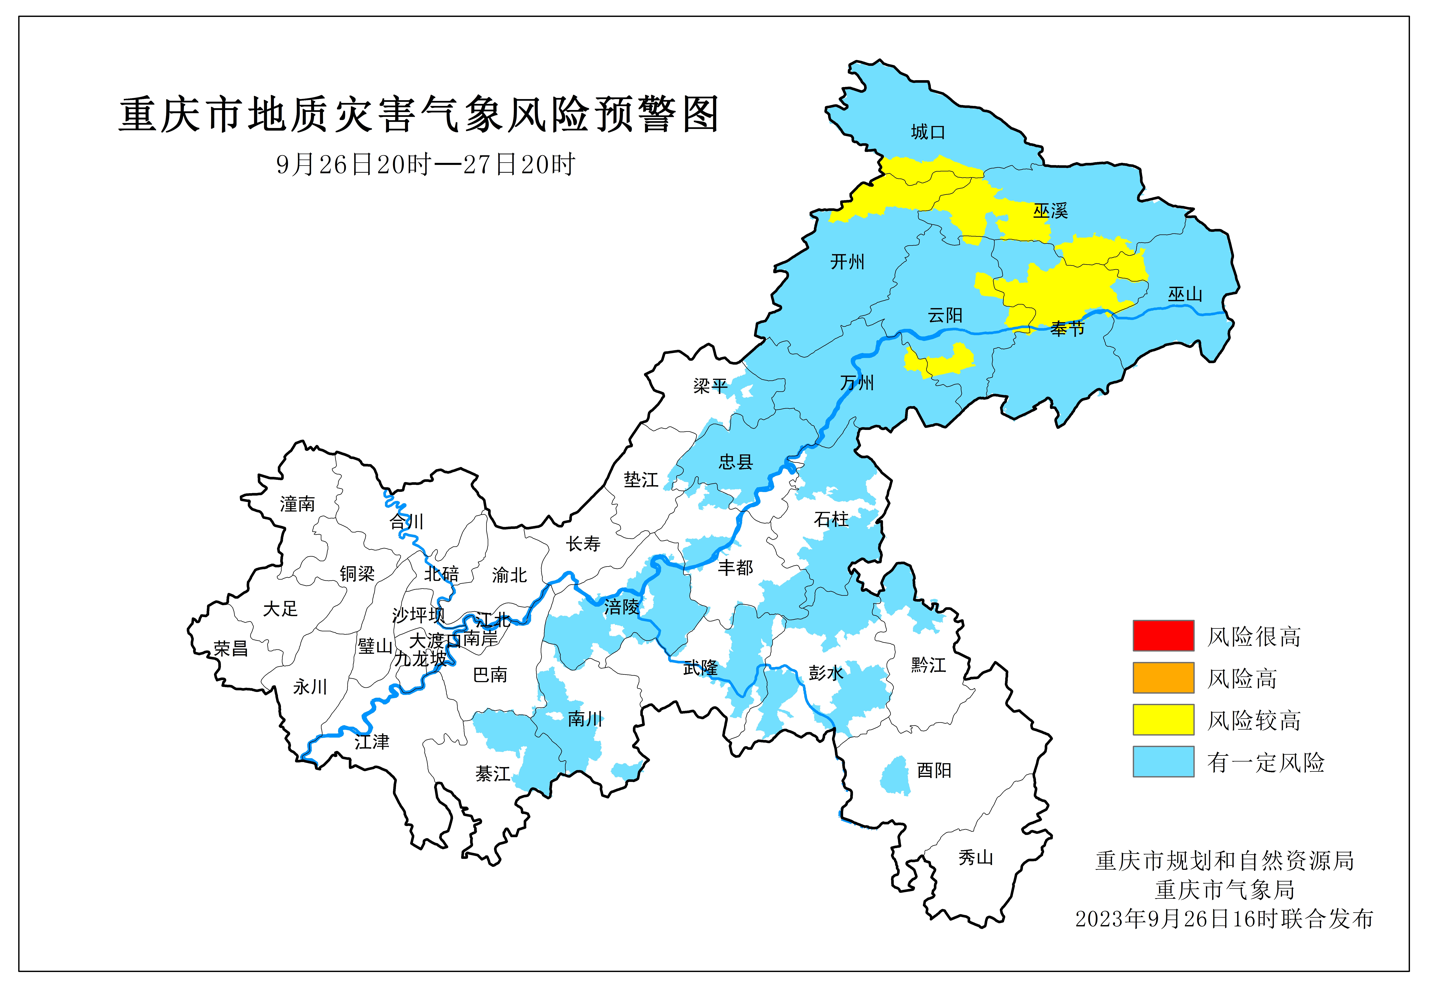 未来24小时 渝东北地区地灾预警转为黄色